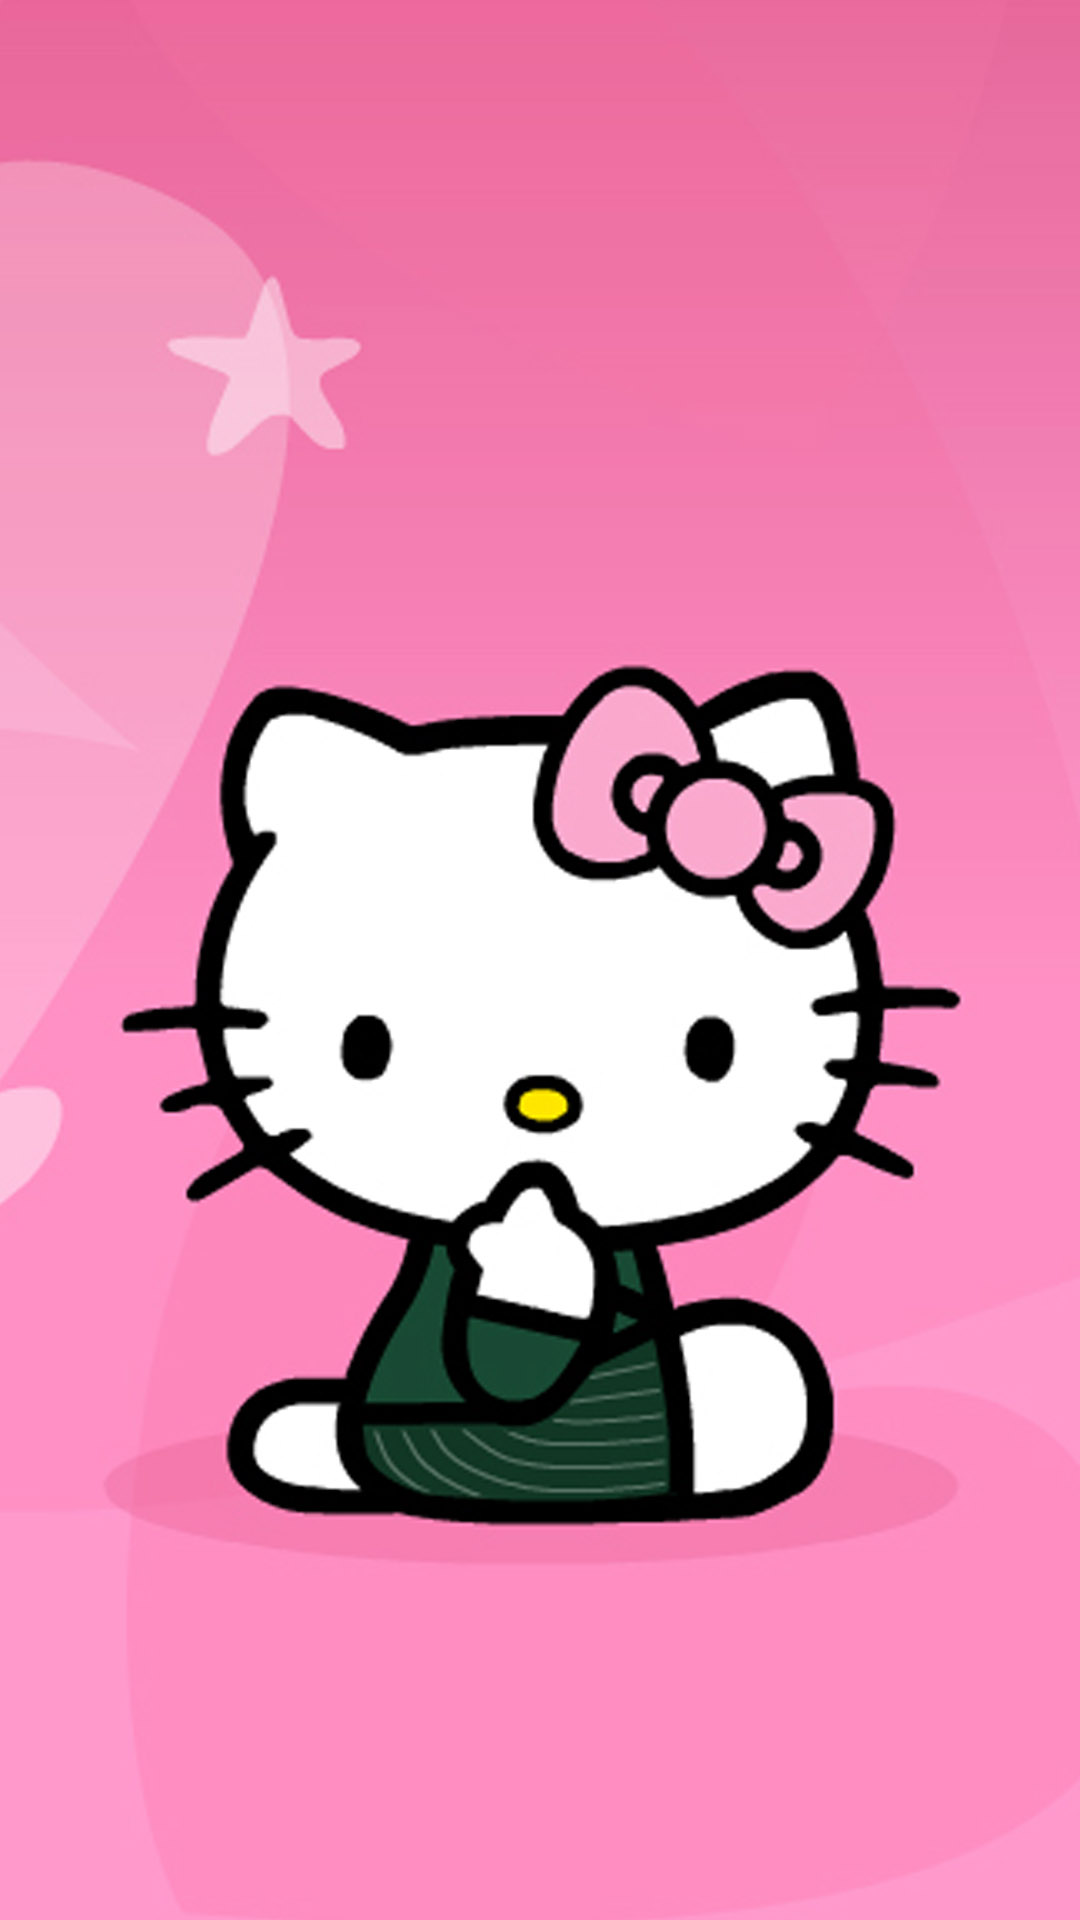 bonjour kitty fond d'écran iphone,dessin animé,rose,illustration,clipart,amour